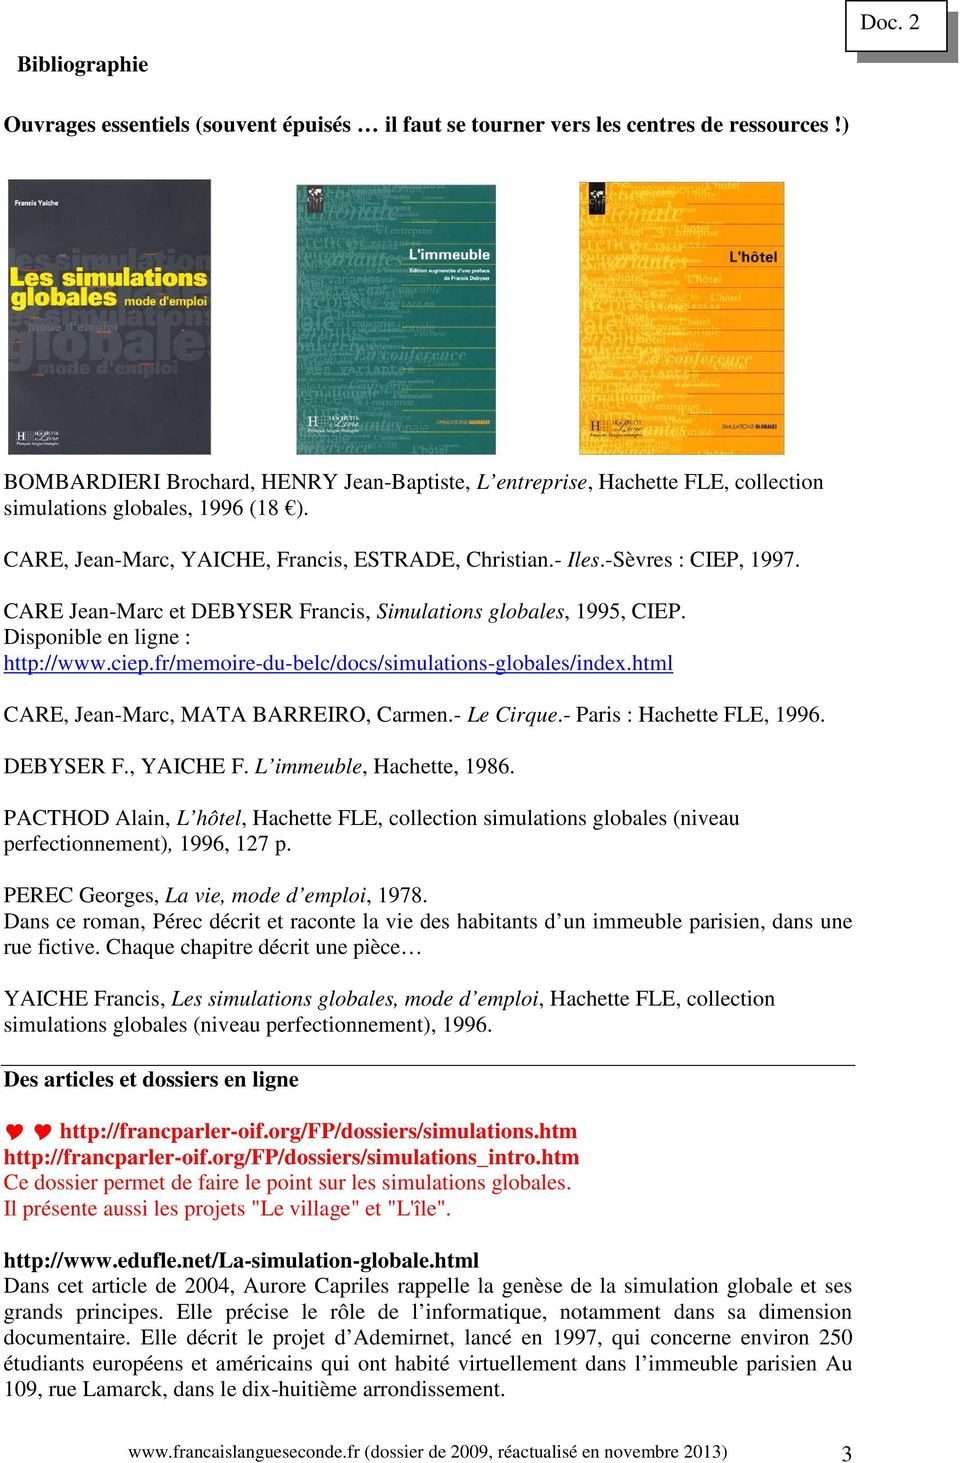 CARE Jean-Marc et DEBYSER Francis, Simulations globales, 1995, CIEP. Disponible en ligne : http://www.ciep.fr/memoire-du-belc/docs/simulations-globales/index.